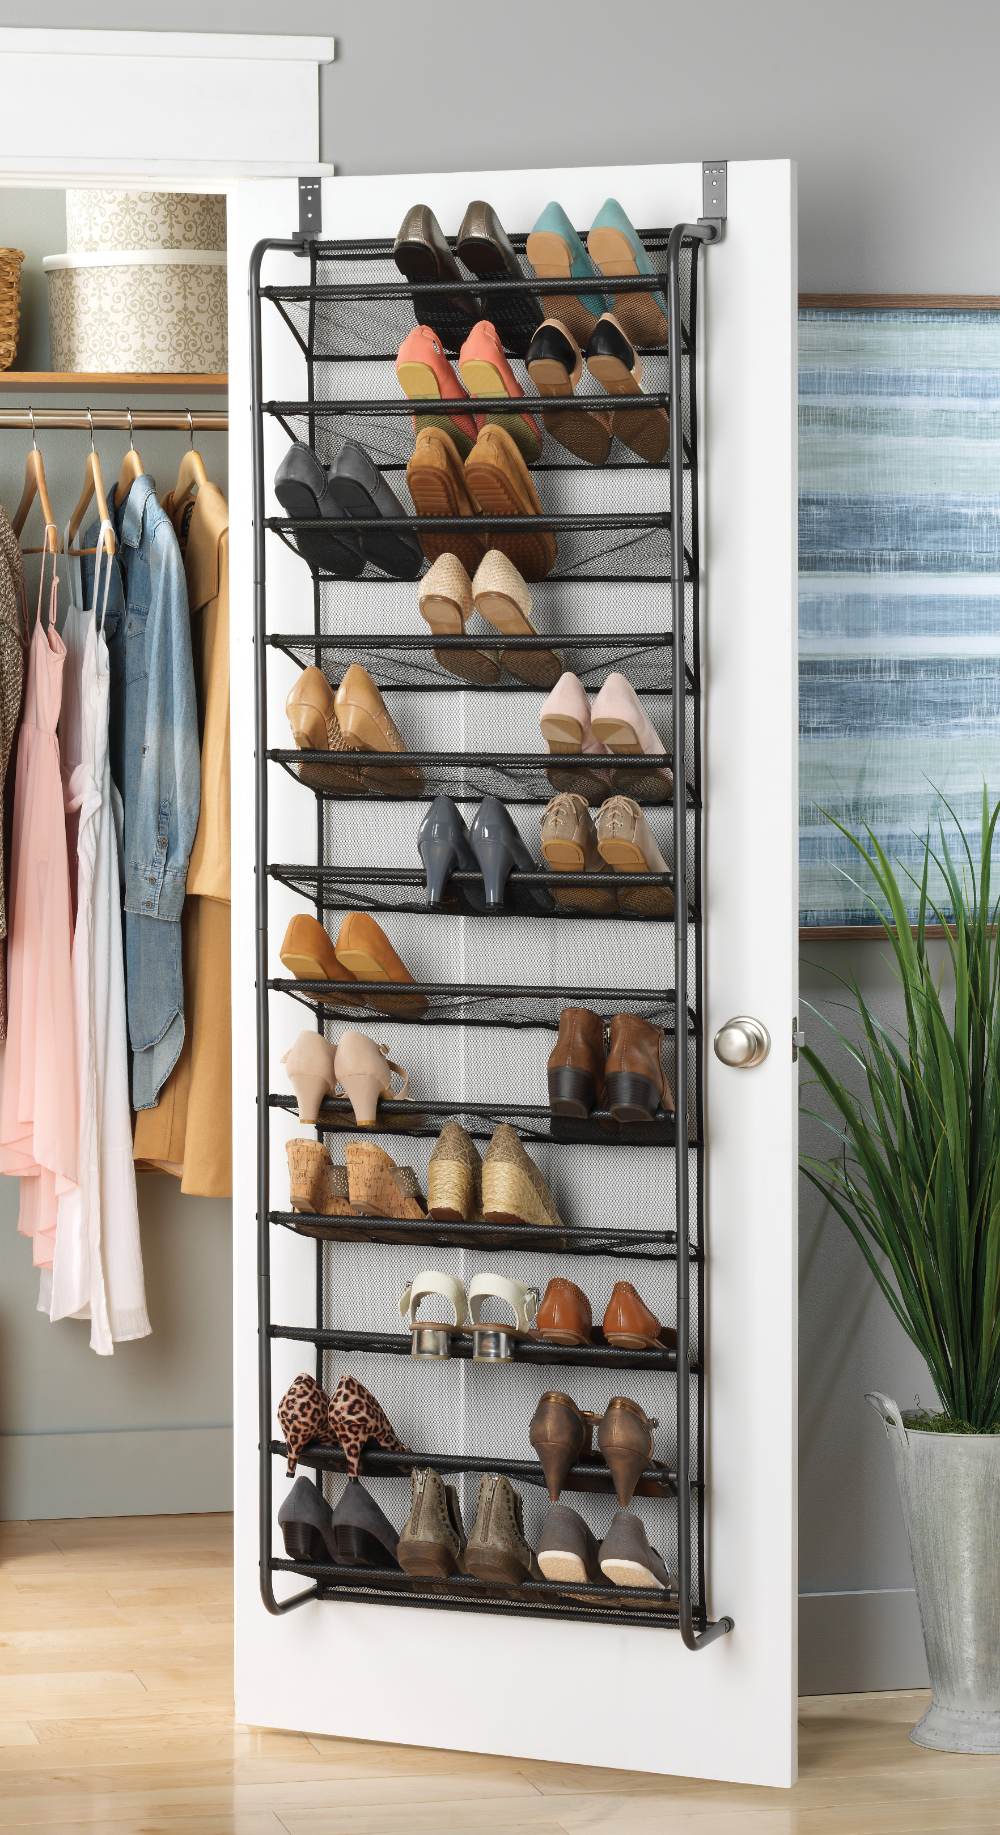 Как хранить обувь - идеи и варианты как организовать место для хранения обуви (105 фото)